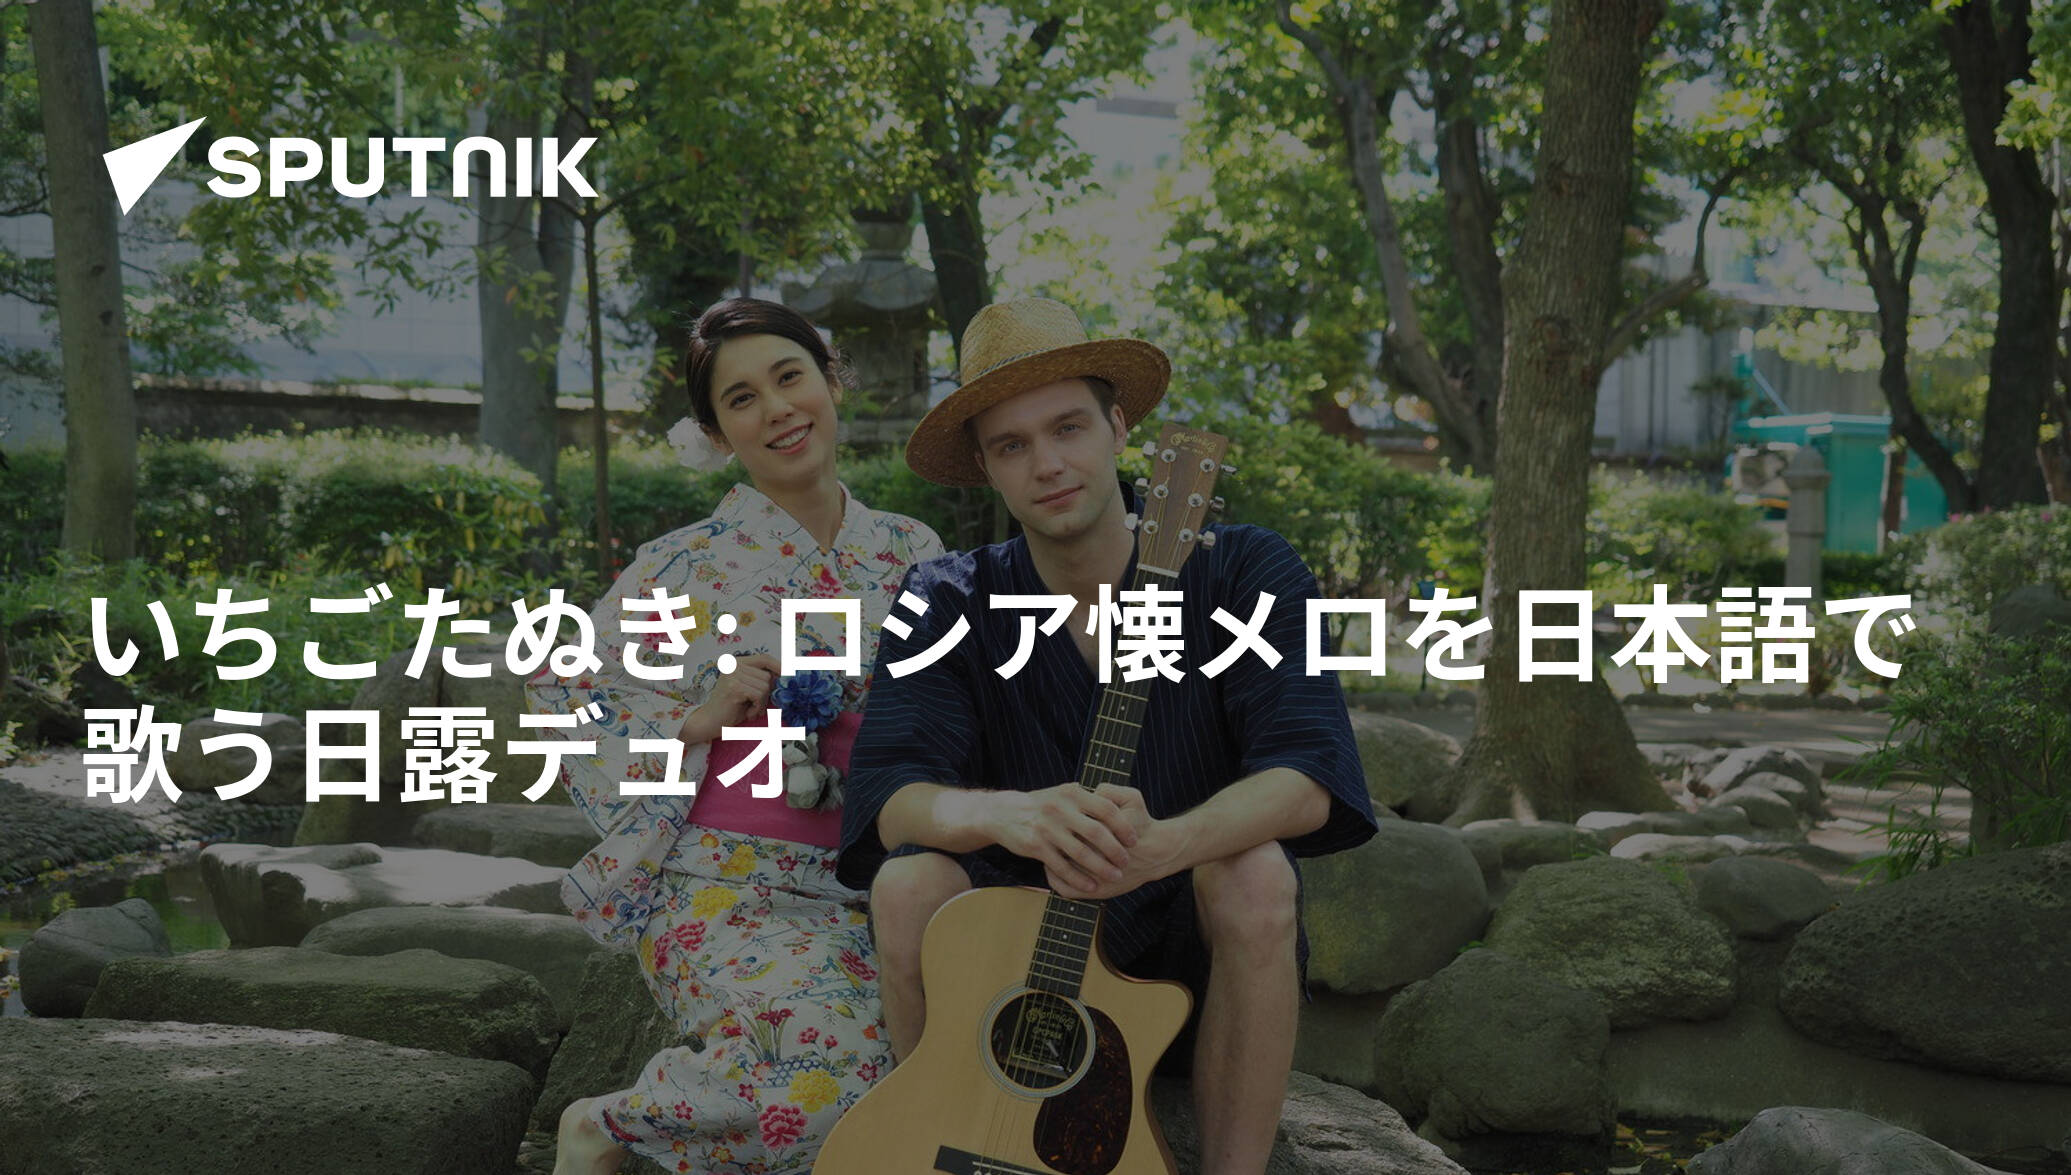 いちごたぬき: ロシア懐メロを日本語で歌う日露デュオ